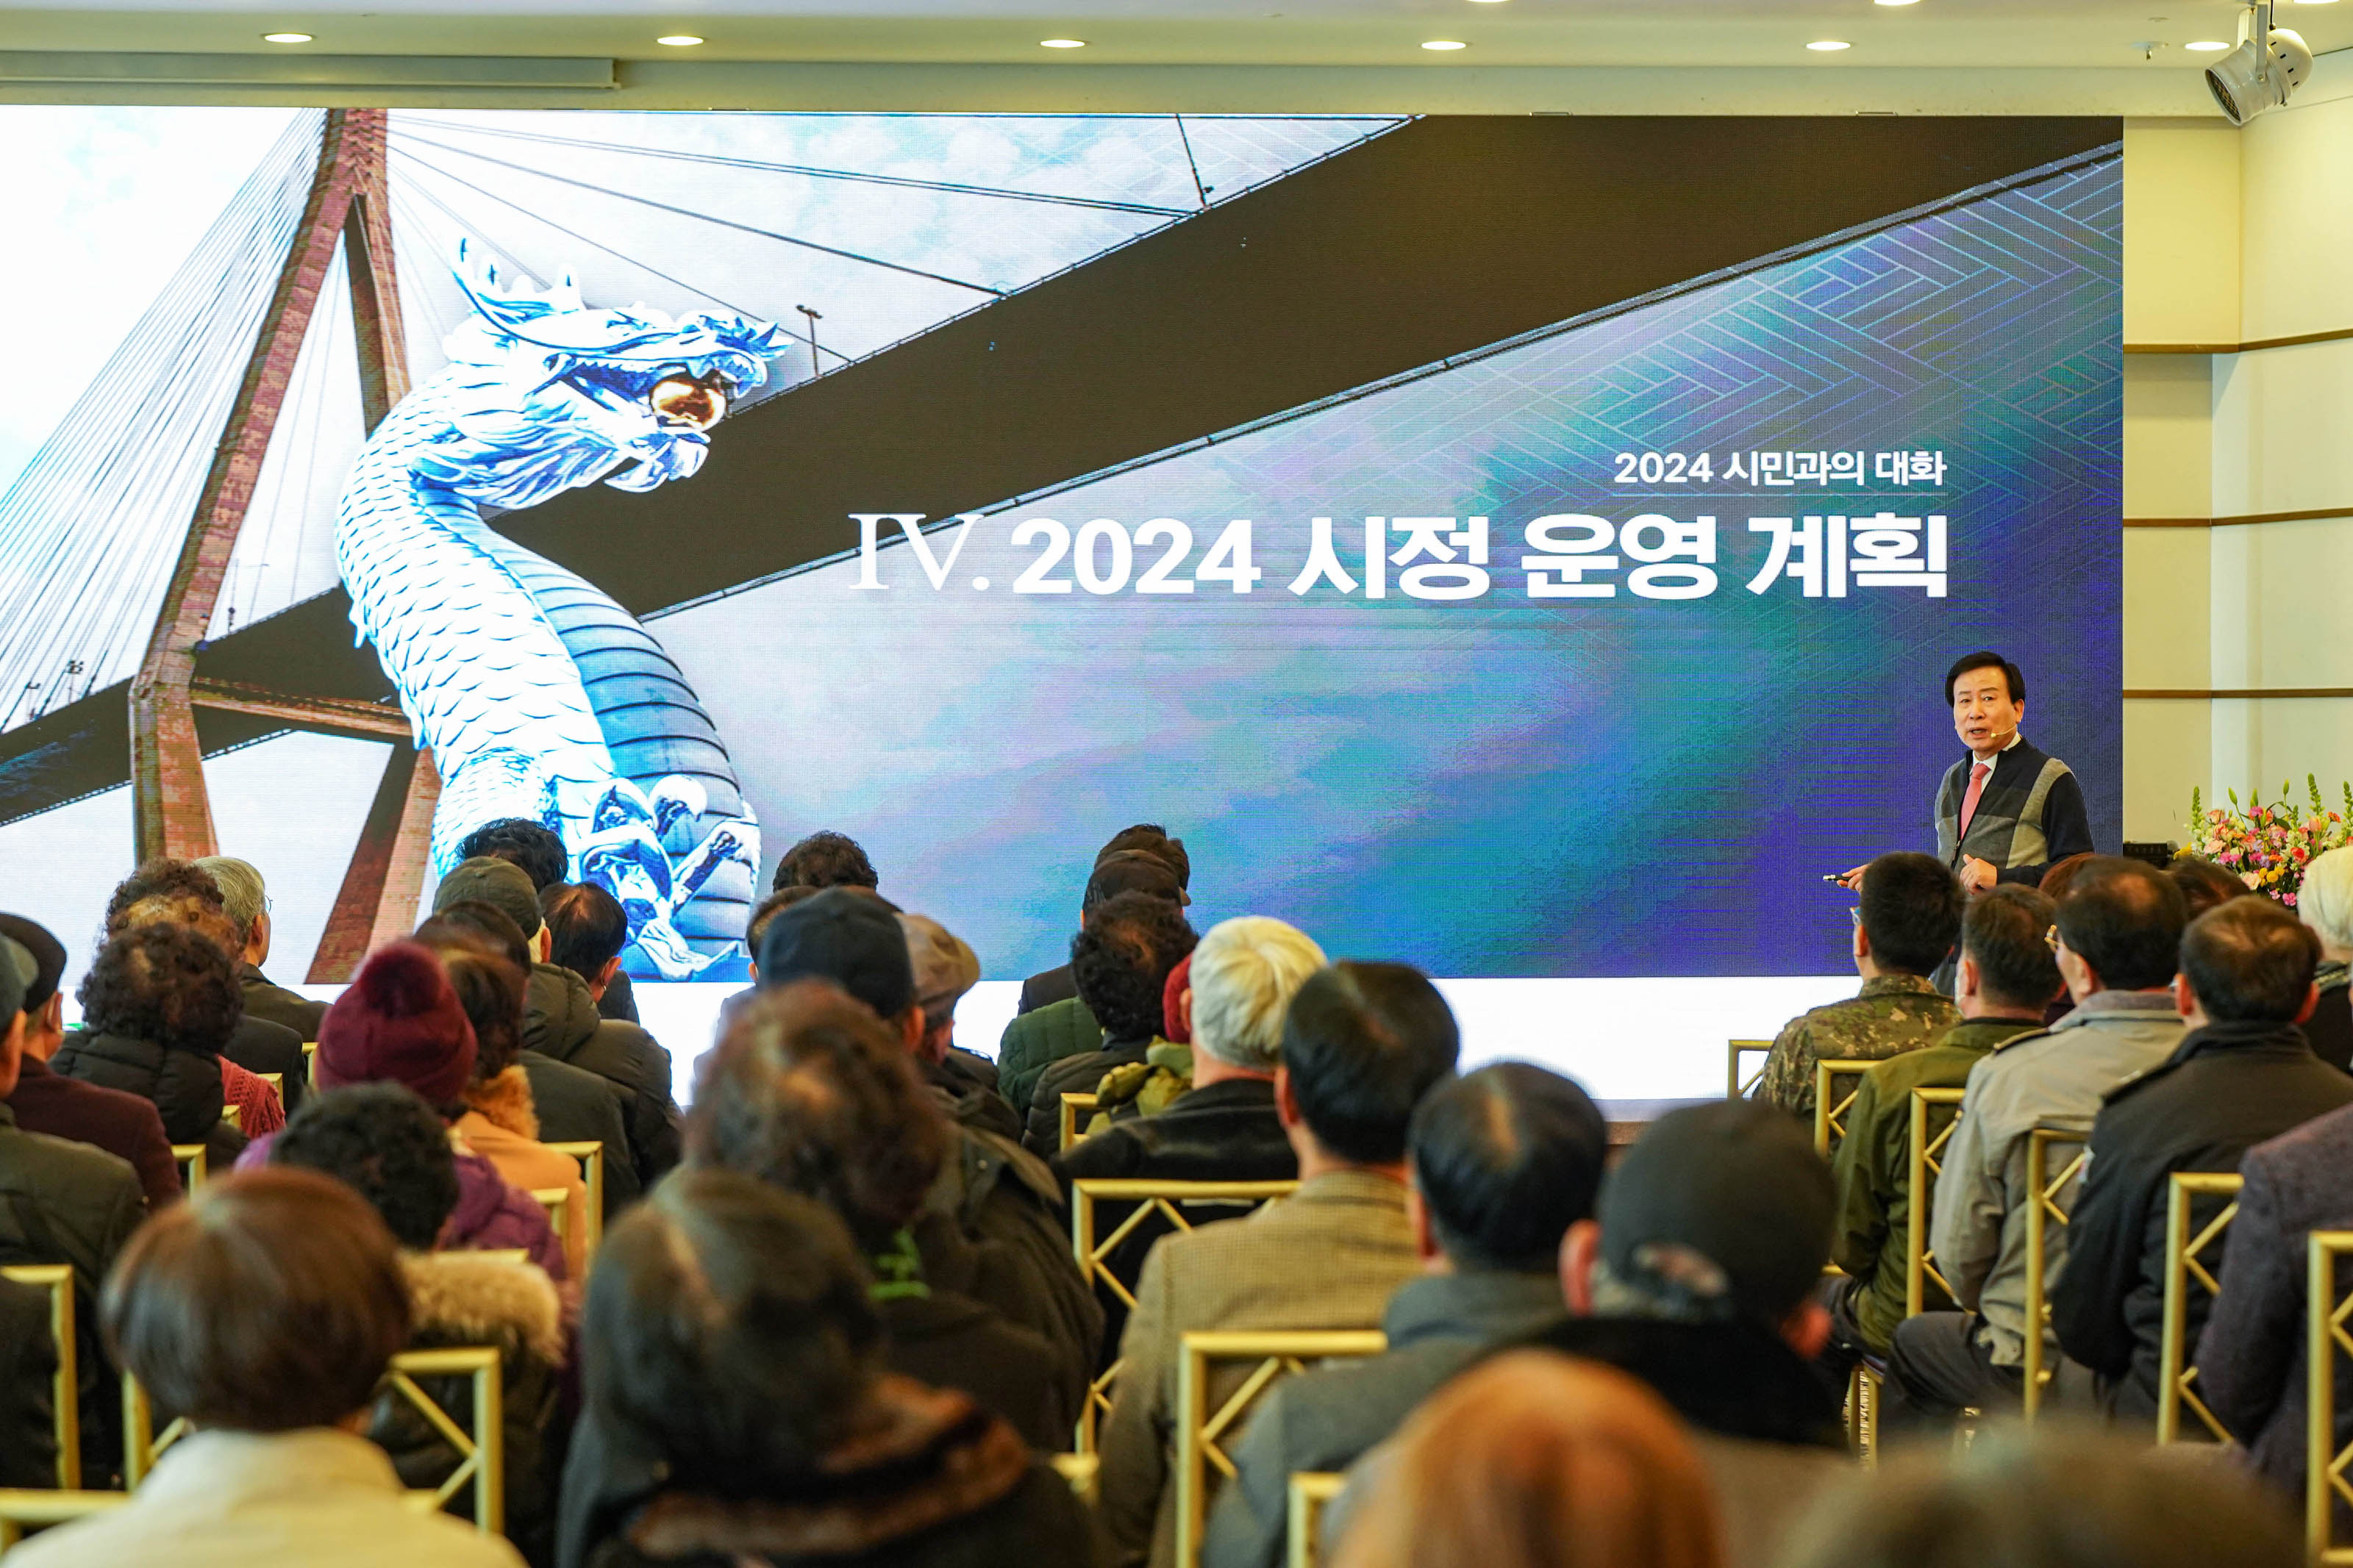 2024 시만과의 대화 2024 시정운영계획 글을 배경으로 두고 시민들과 소통중인 박홍률 시장과 경청중인 시민들